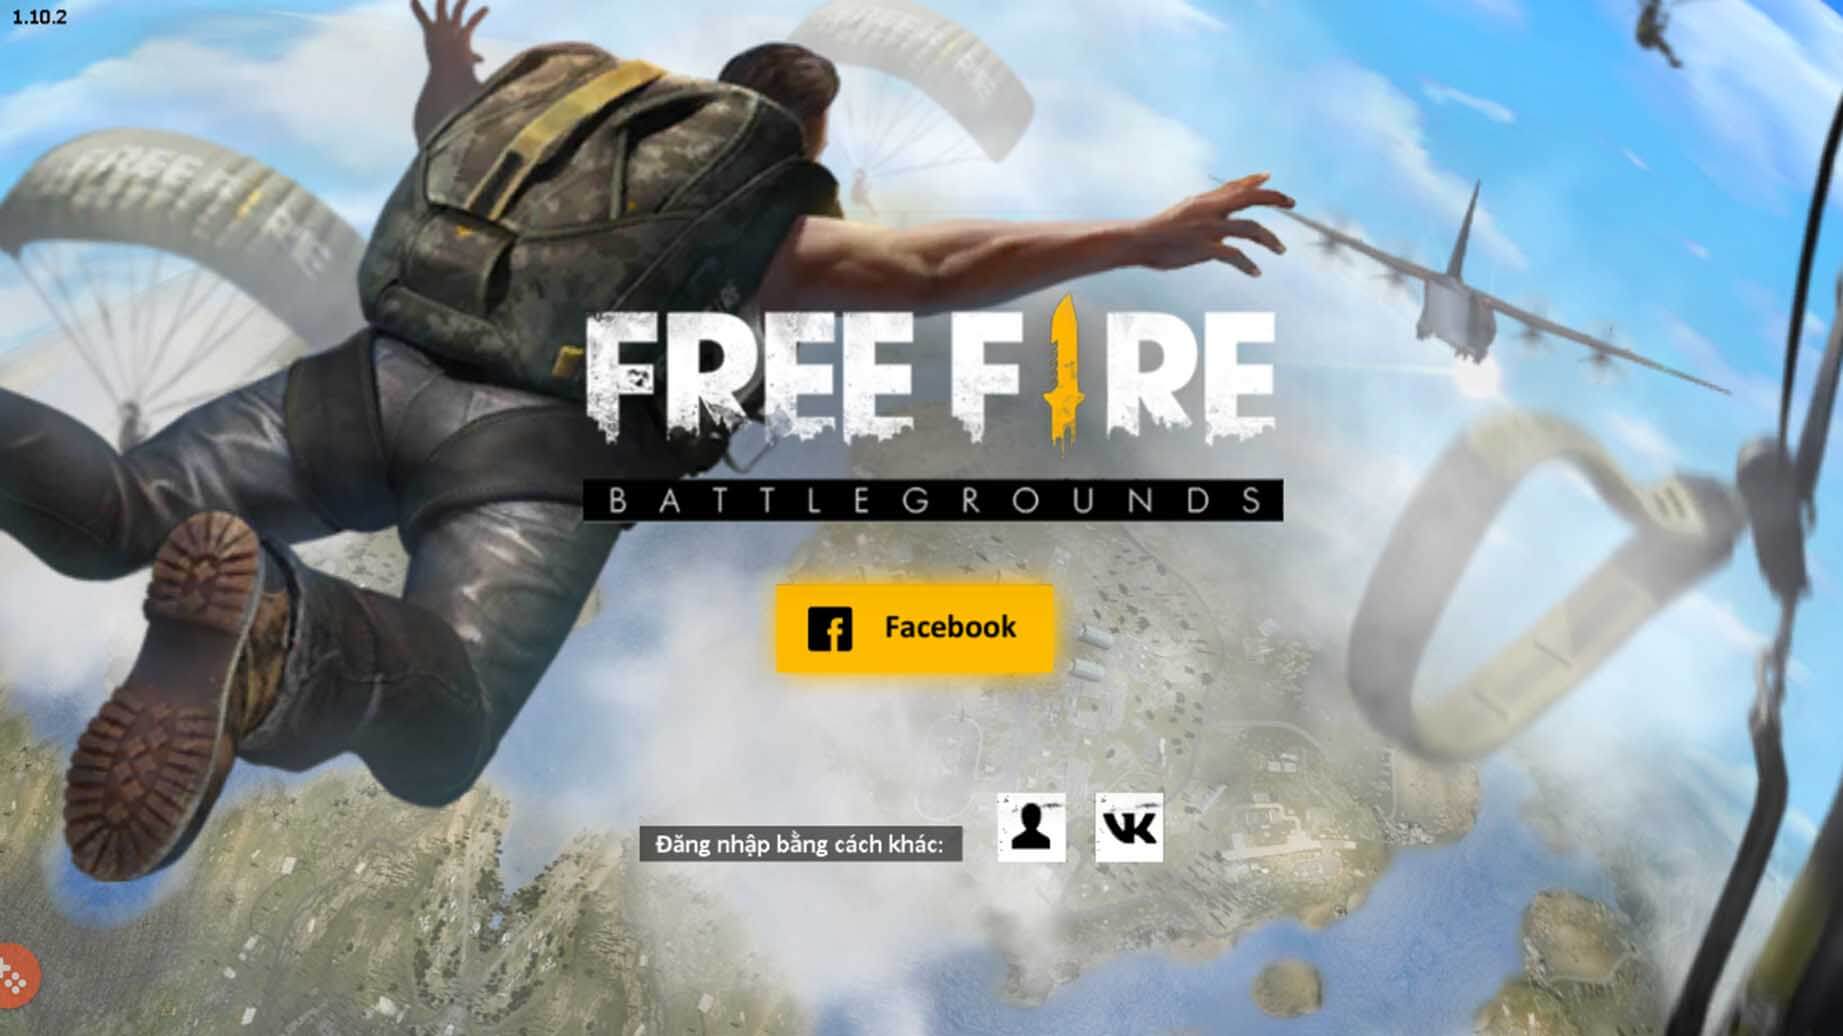 Free Fire – Battlegrounds